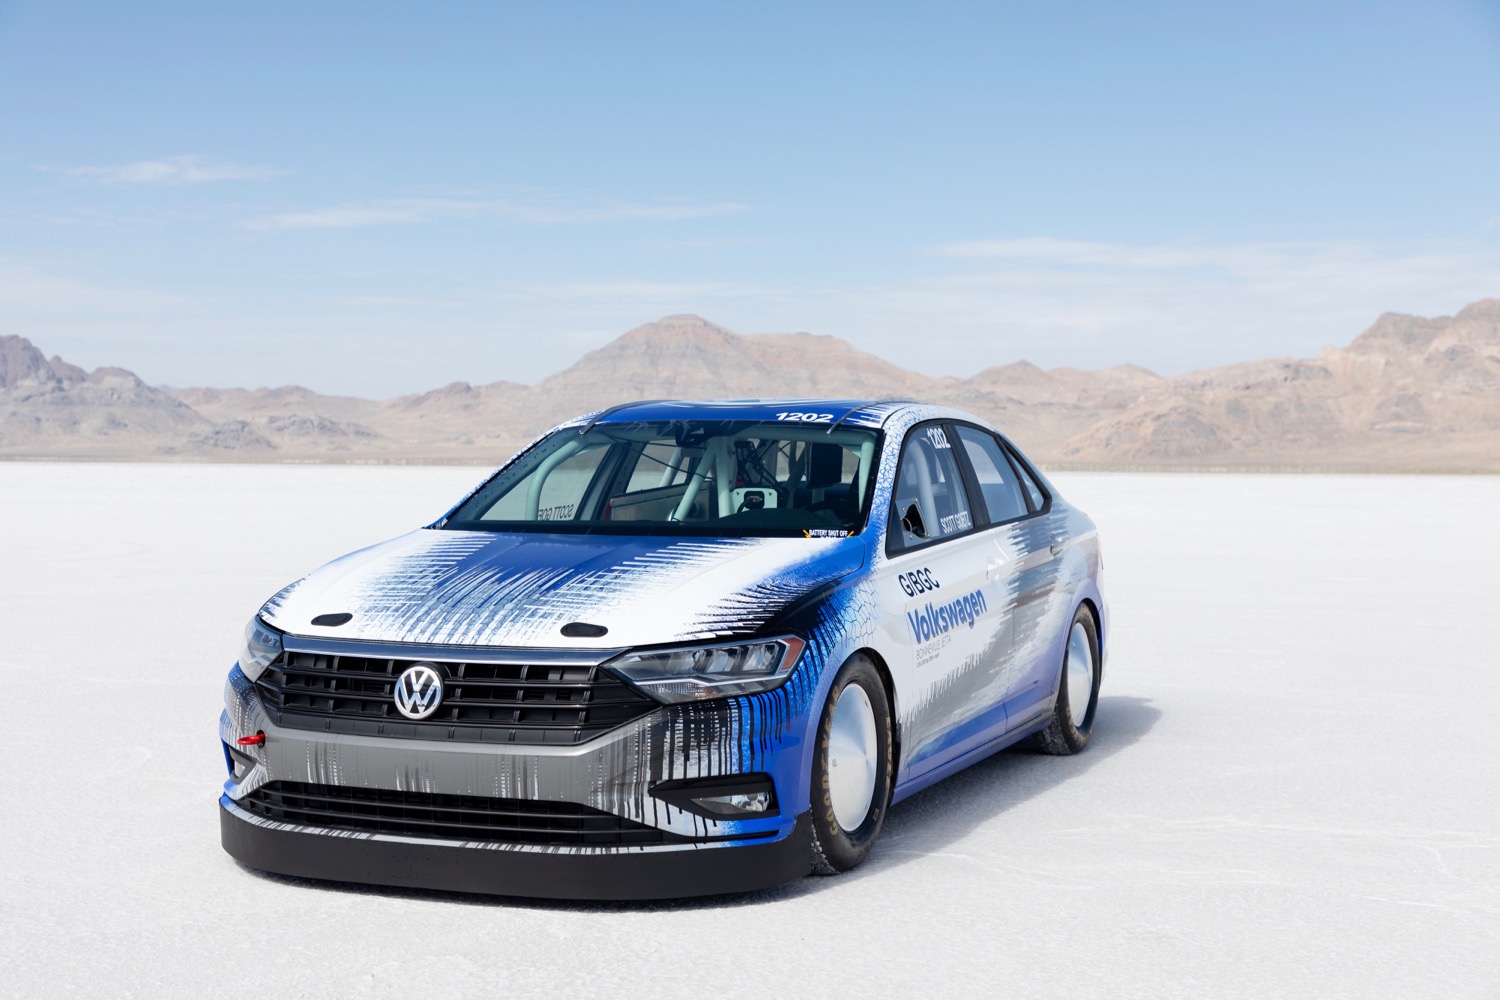 2019 Volkswagen Jetta land-speed record car